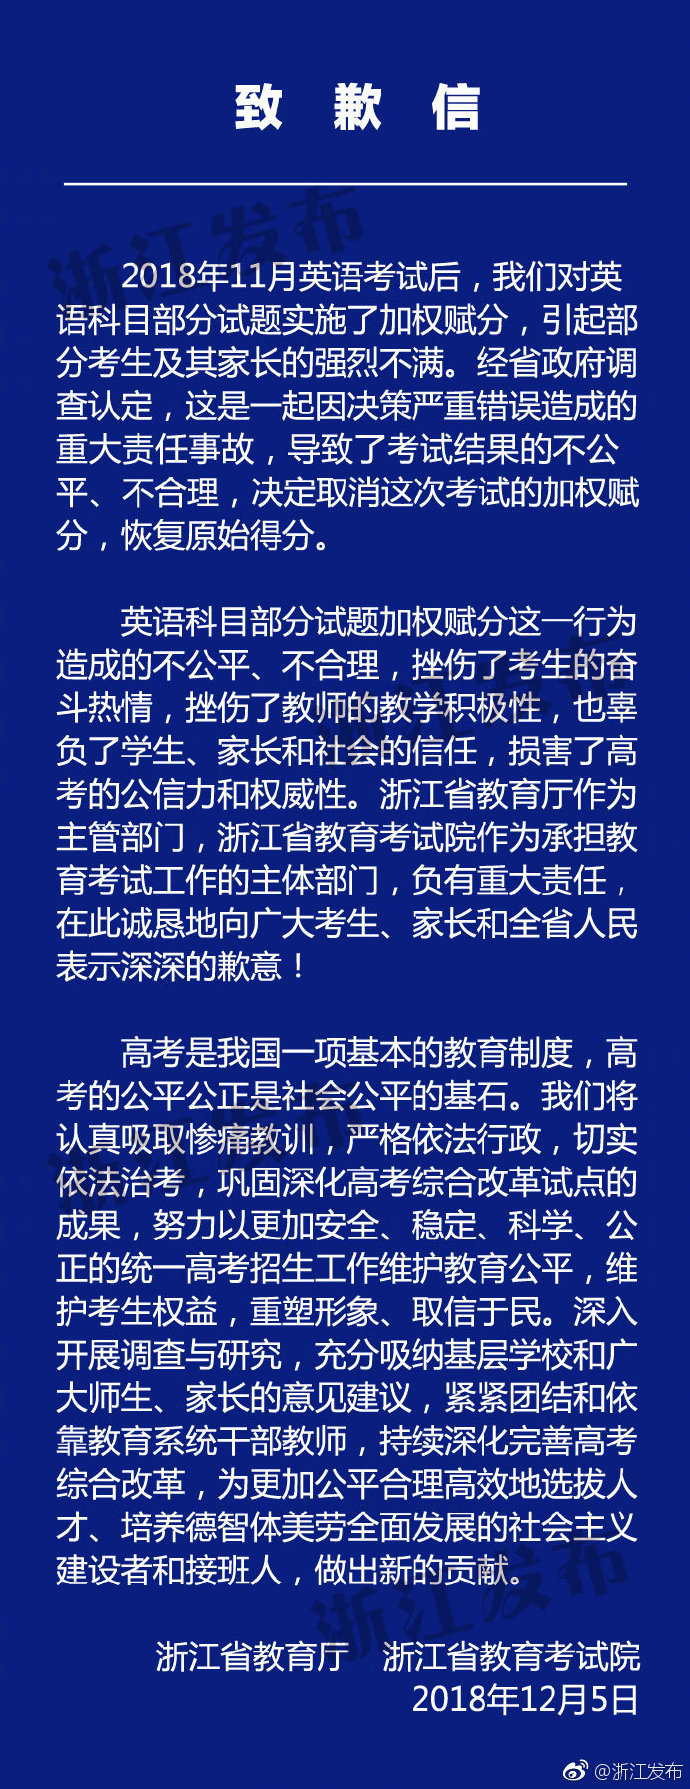 浙江省教育厅致歉：取消加权赋分 恢复原始得分